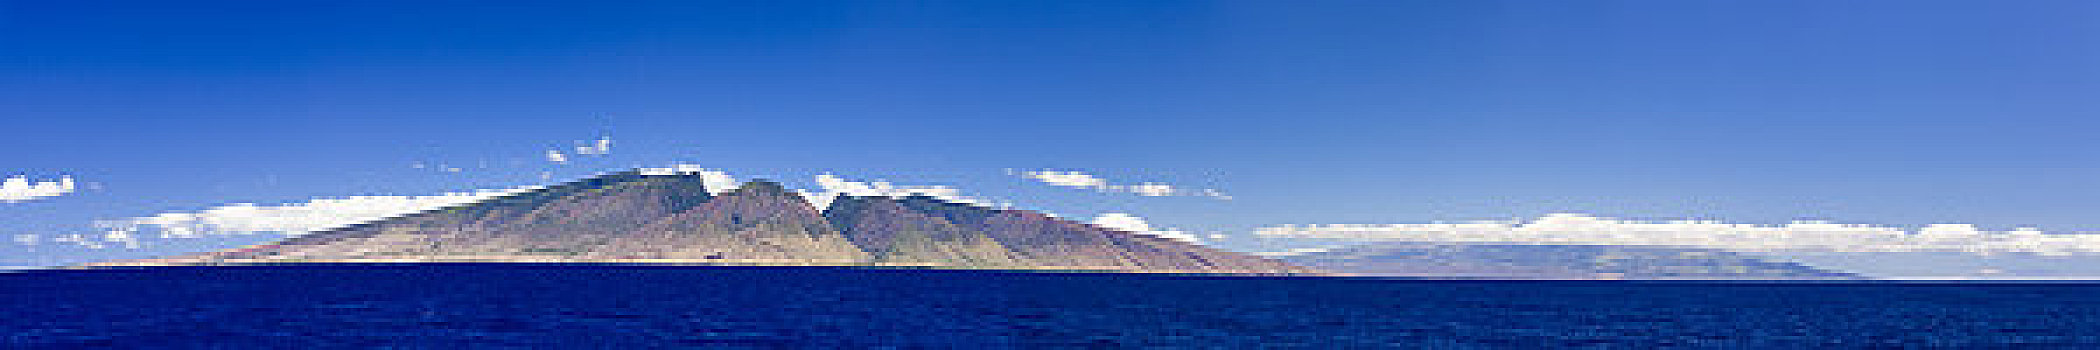 毛伊岛,全景,西部,山峦,莫洛基尼岛,顶峰,夏威夷大岛,罐,风景,远处,右边